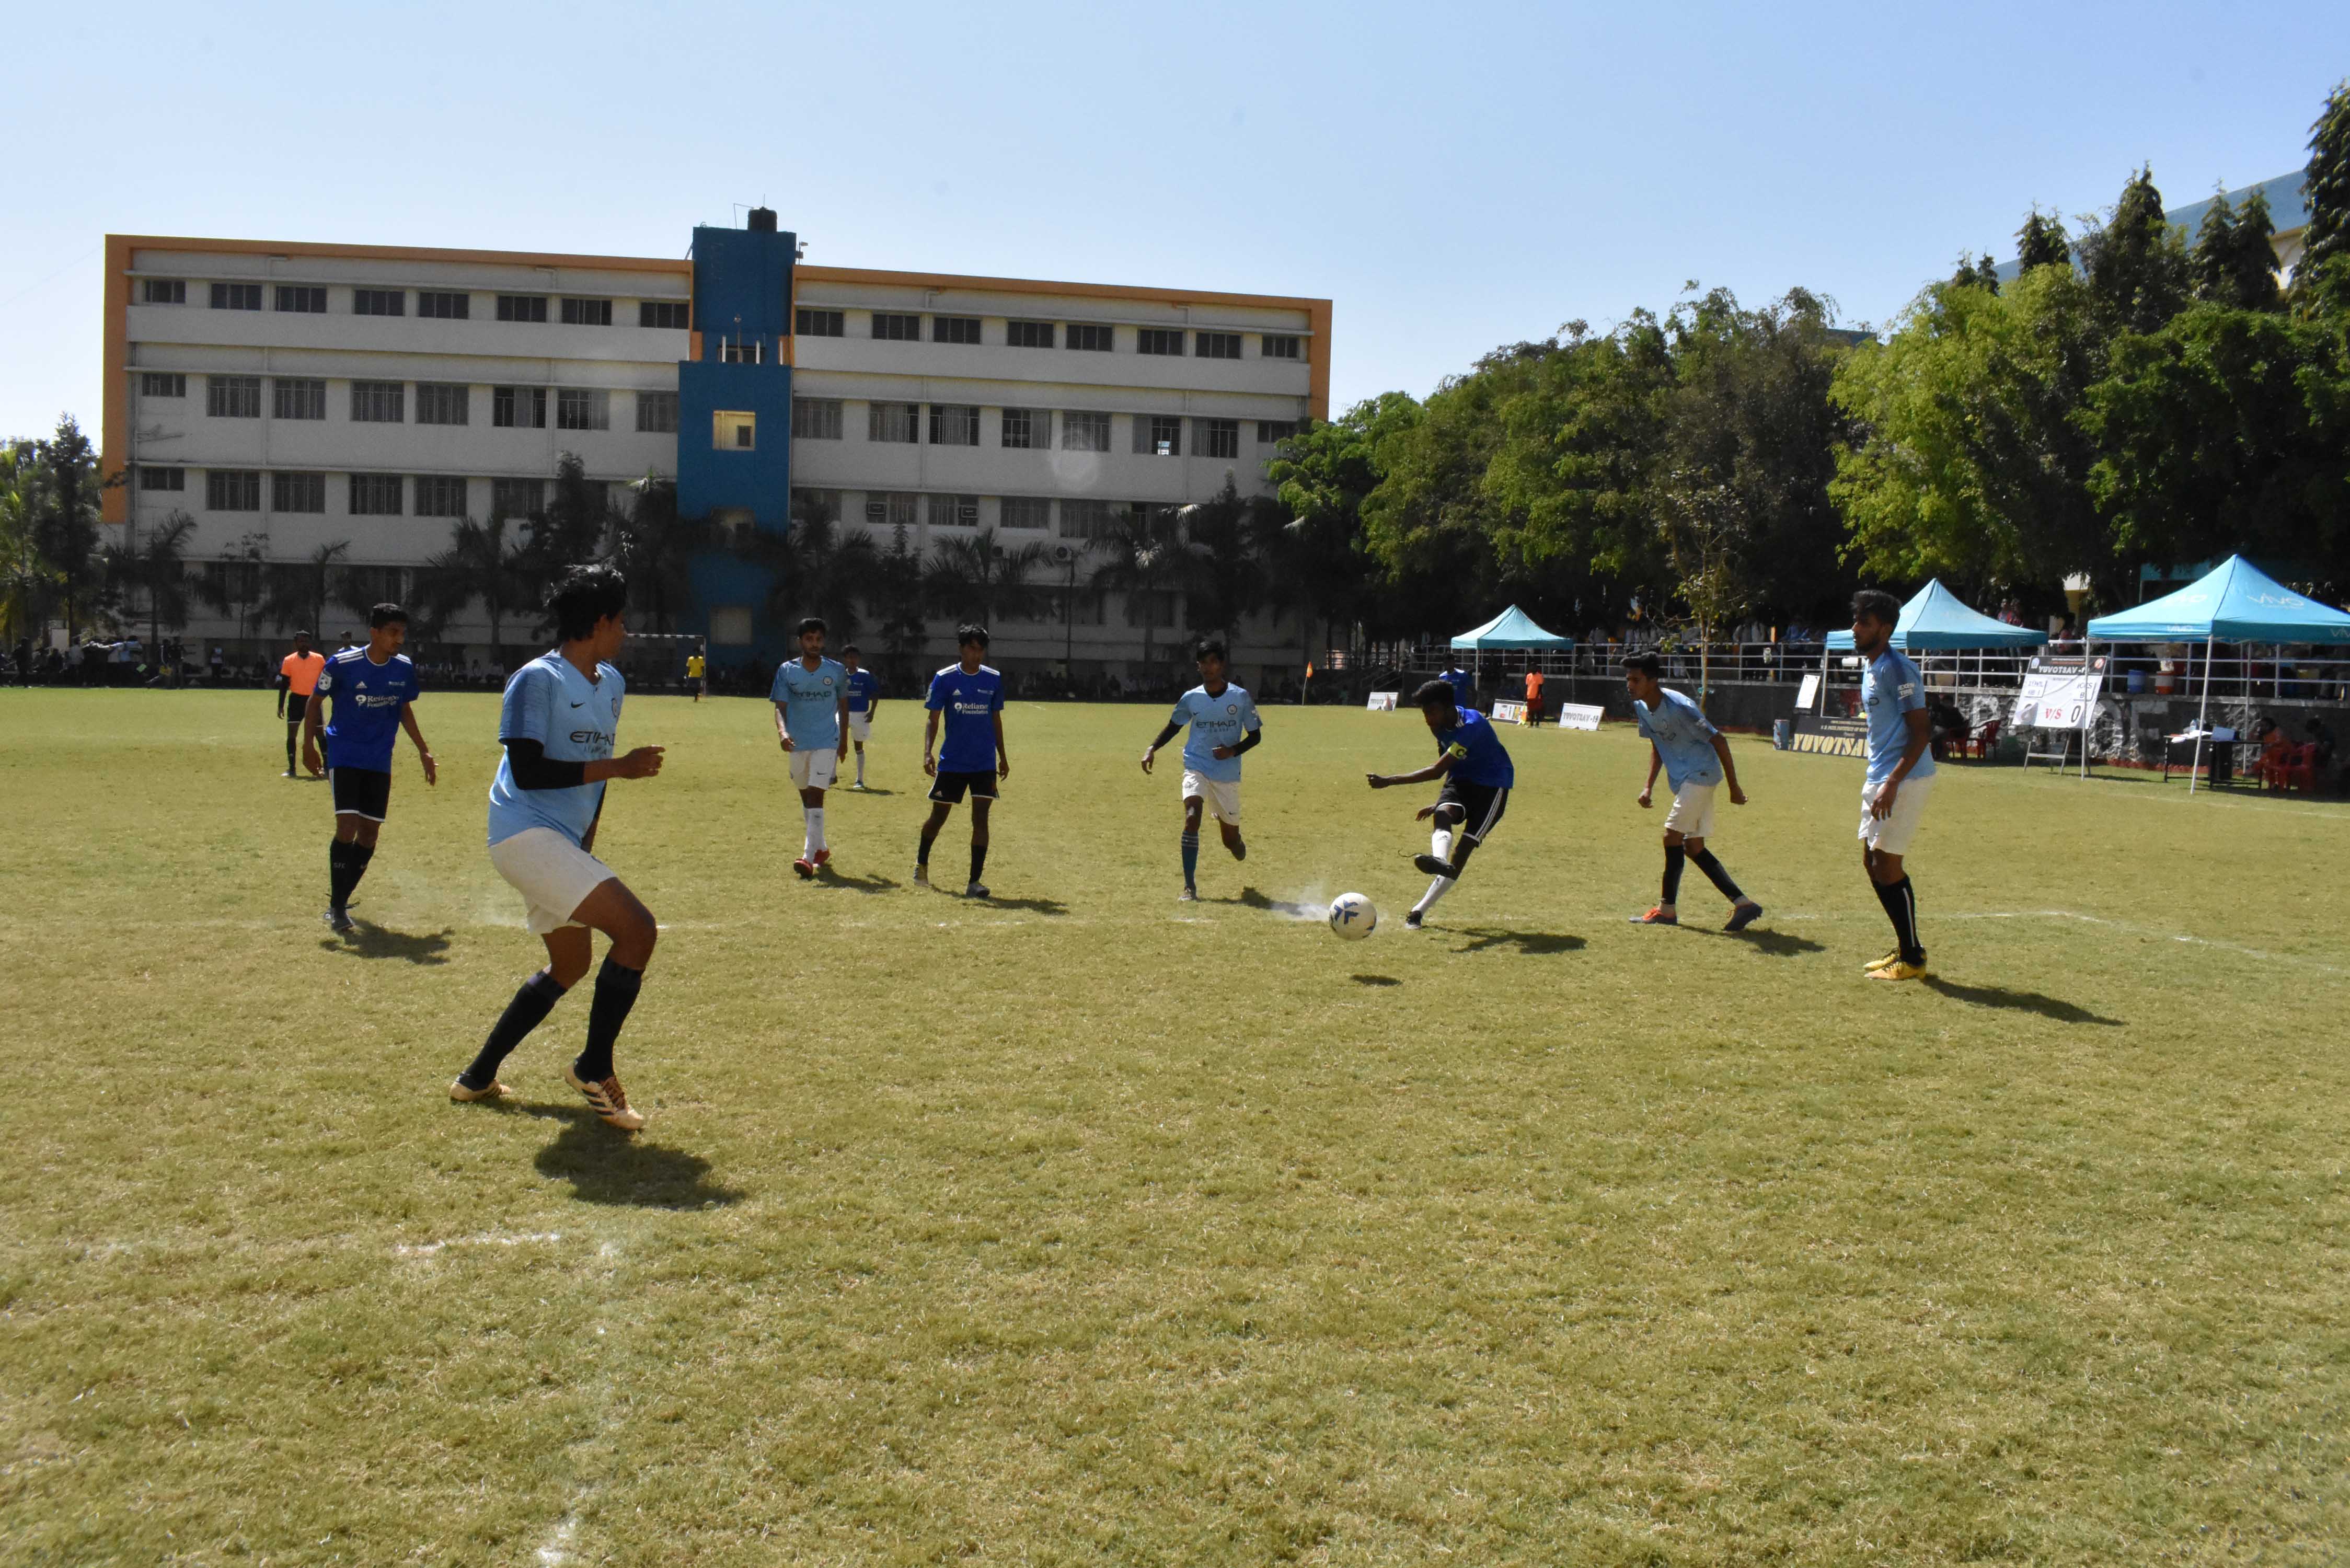 युवोत्सव फुटबॉल स्पर्धेत इंदिरा कॉलेजची विजयी सलामी 